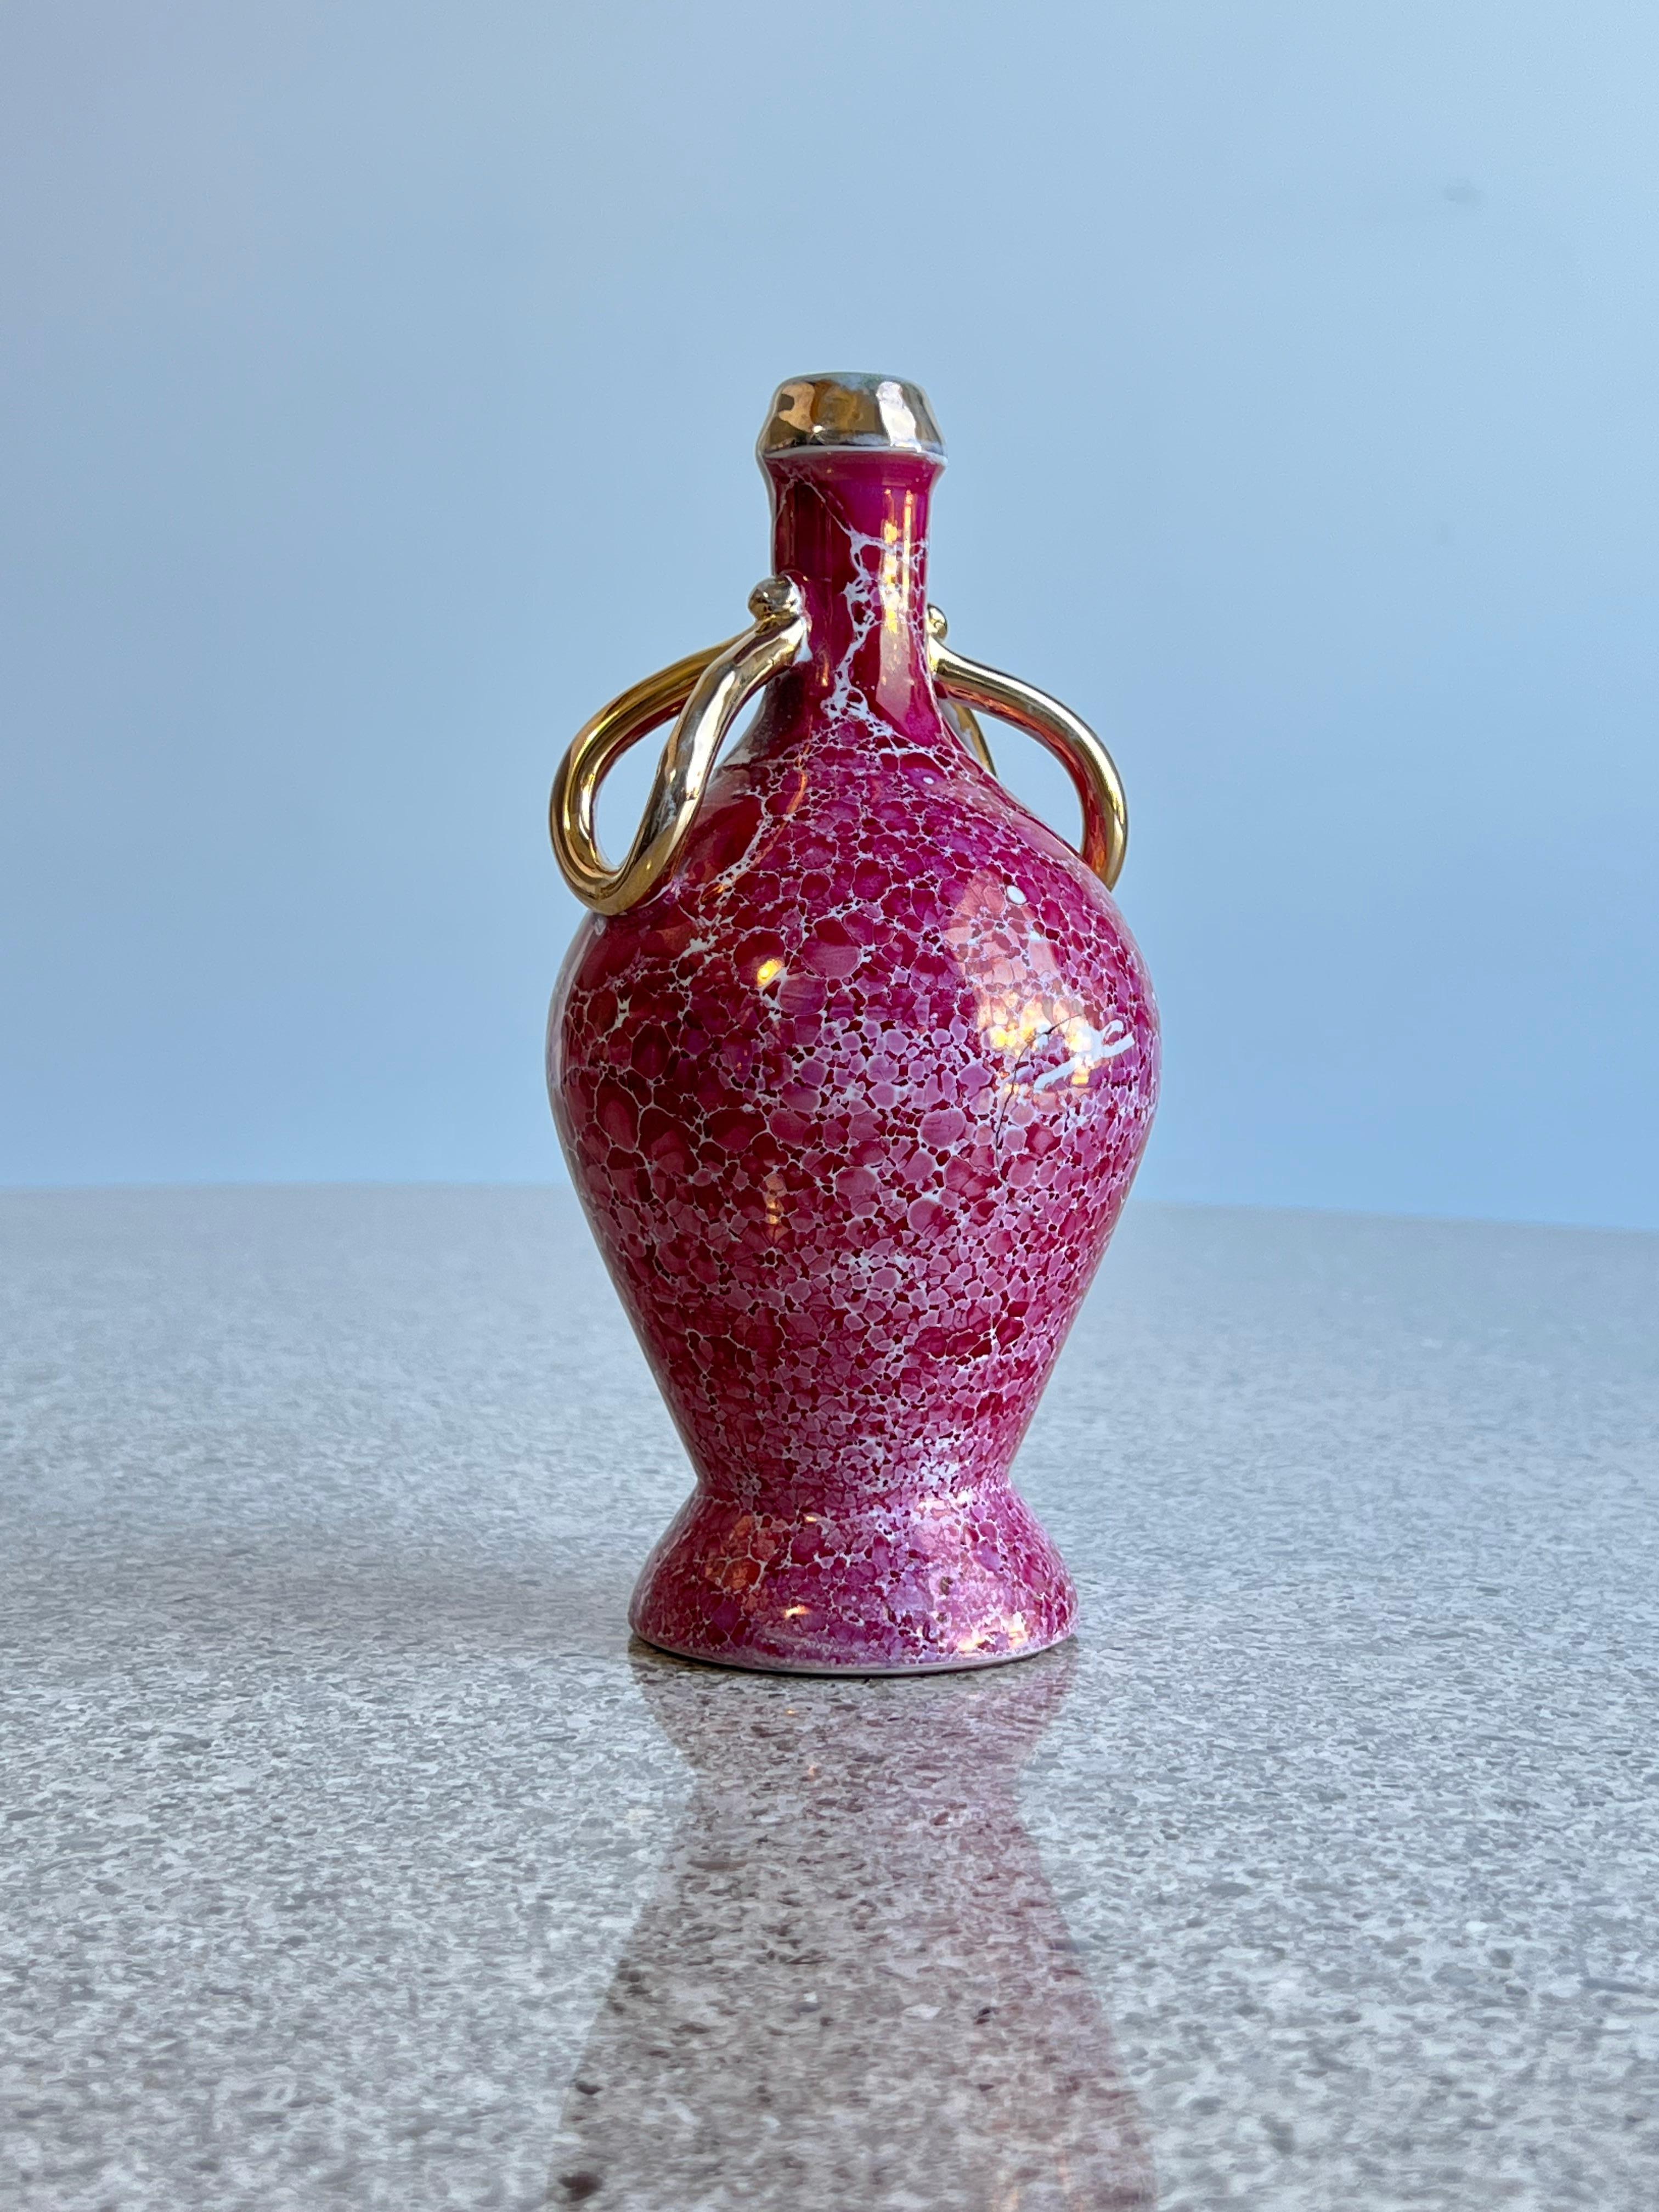 Porcelaine italienne de Limoges Bourgogne et or 1970.
Incroyable vase de 20 cm de haut, peint à la main en or, probablement destiné à servir de l'huile d'olive ou du vinaigre sur les tables de repas italiennes des années 1950. 
  